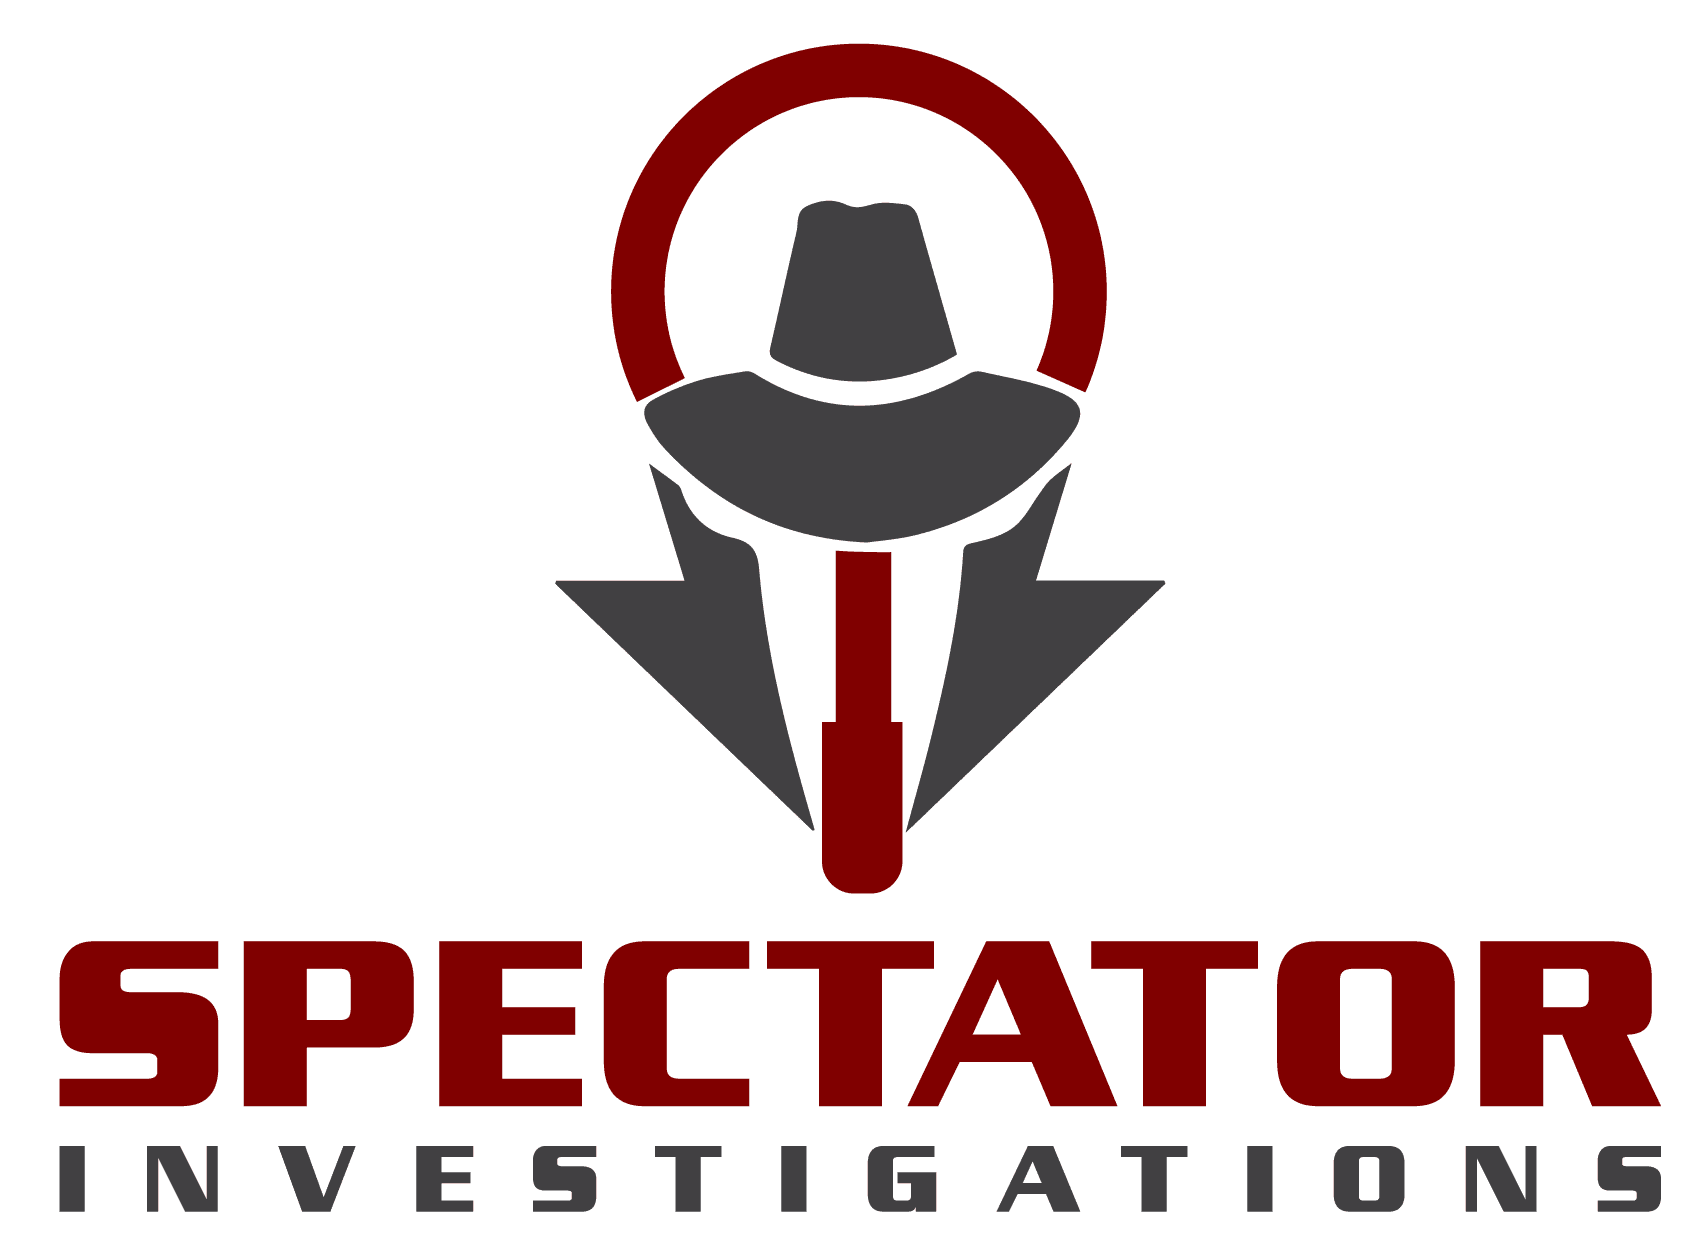 A red and black logo for spectator vestigation